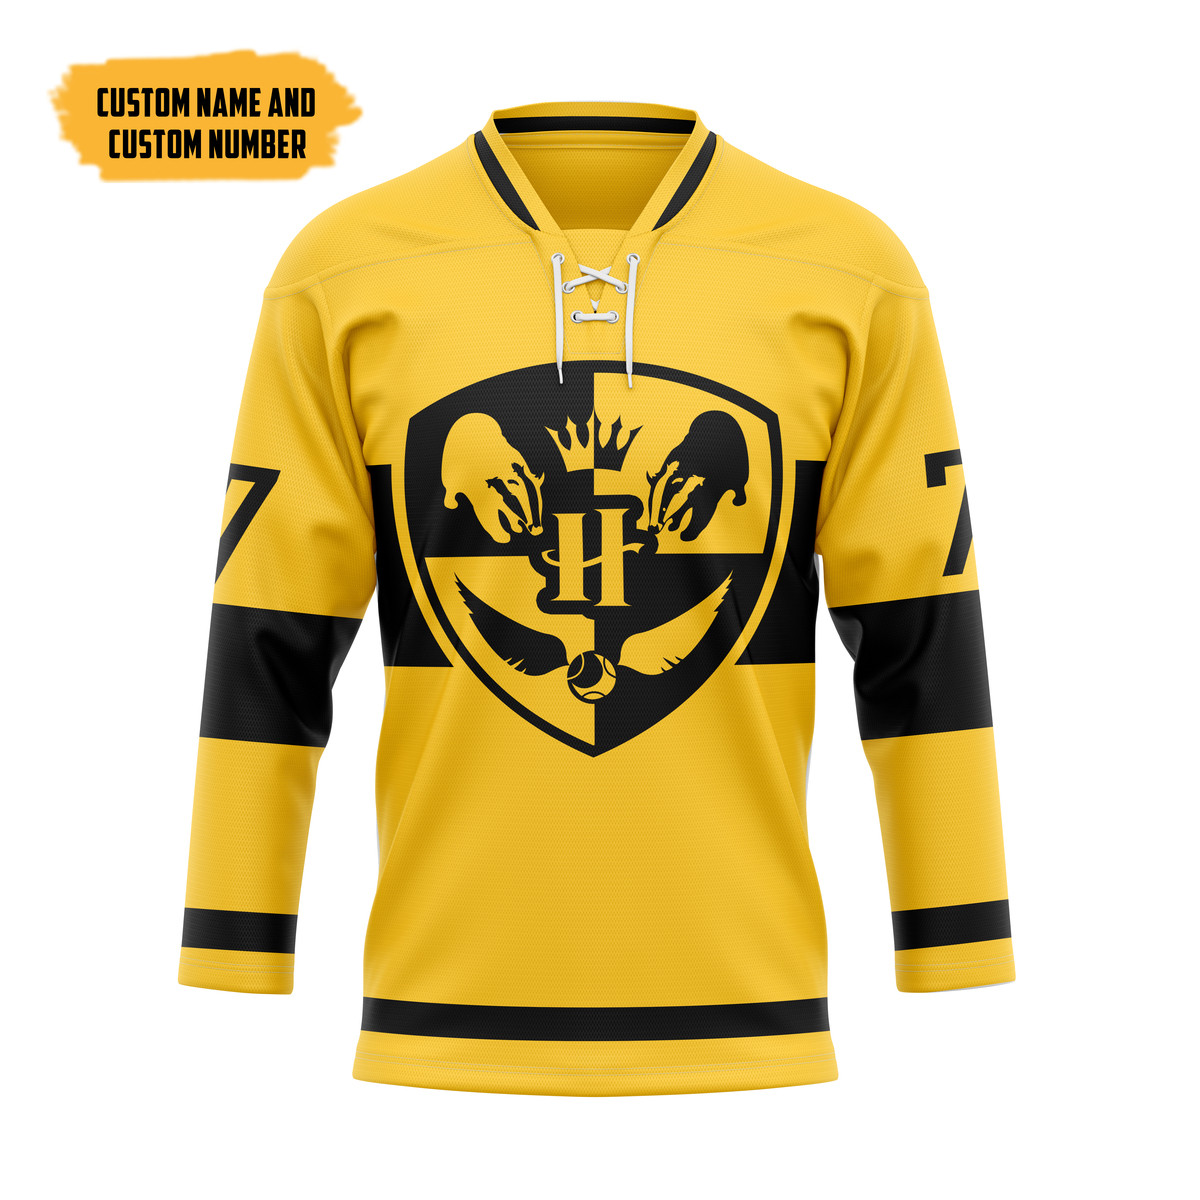 The Best Hockey Jersey Shirt 117